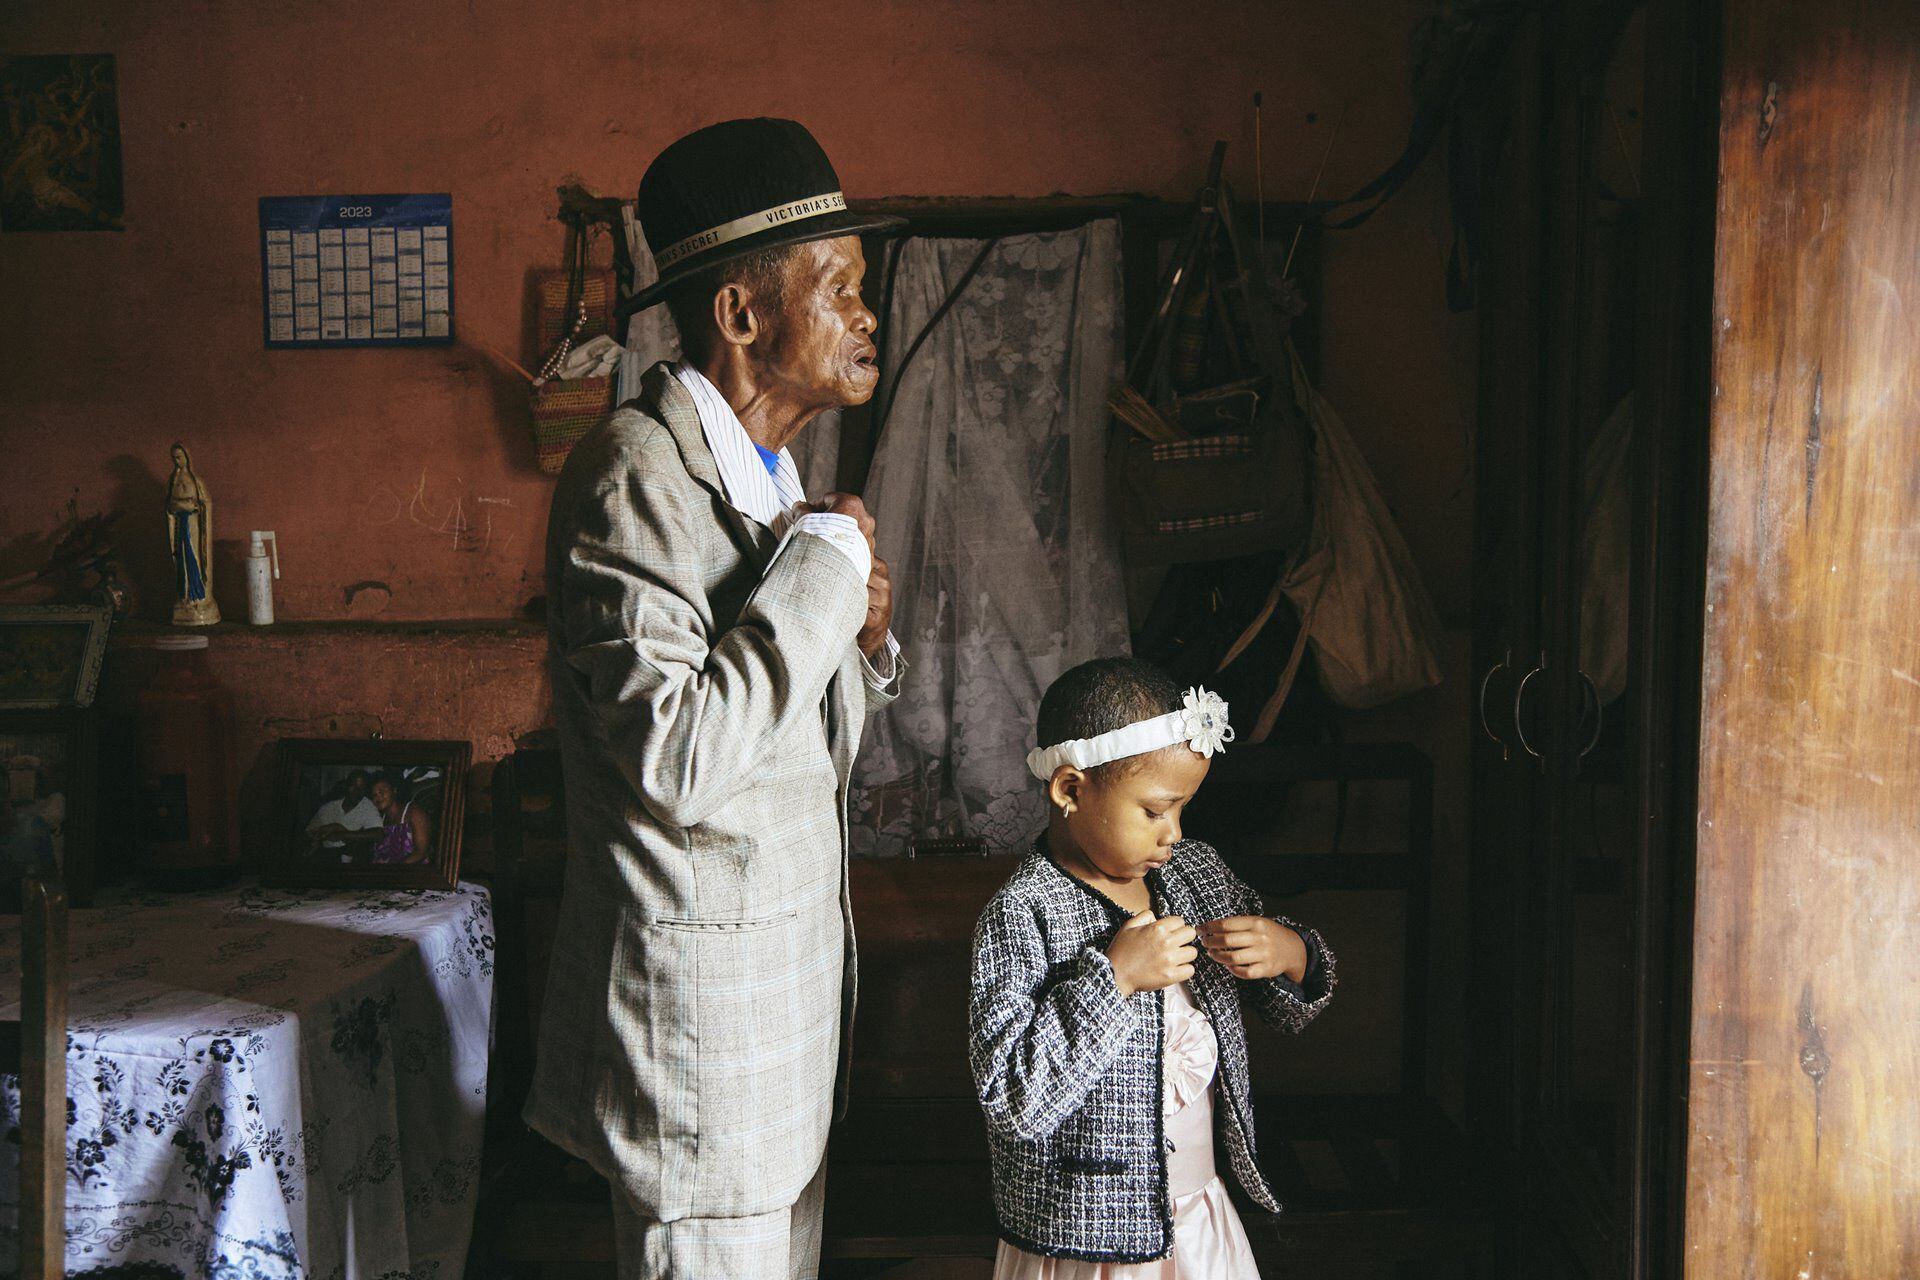 La fotógrafa de GEO, Lee-Ann Olwage, de Sudáfrica ganó la categoría de historia del año con imágenes que documentan la demencia en Madagascar. Kiʻi: Lee-Ann Olwage